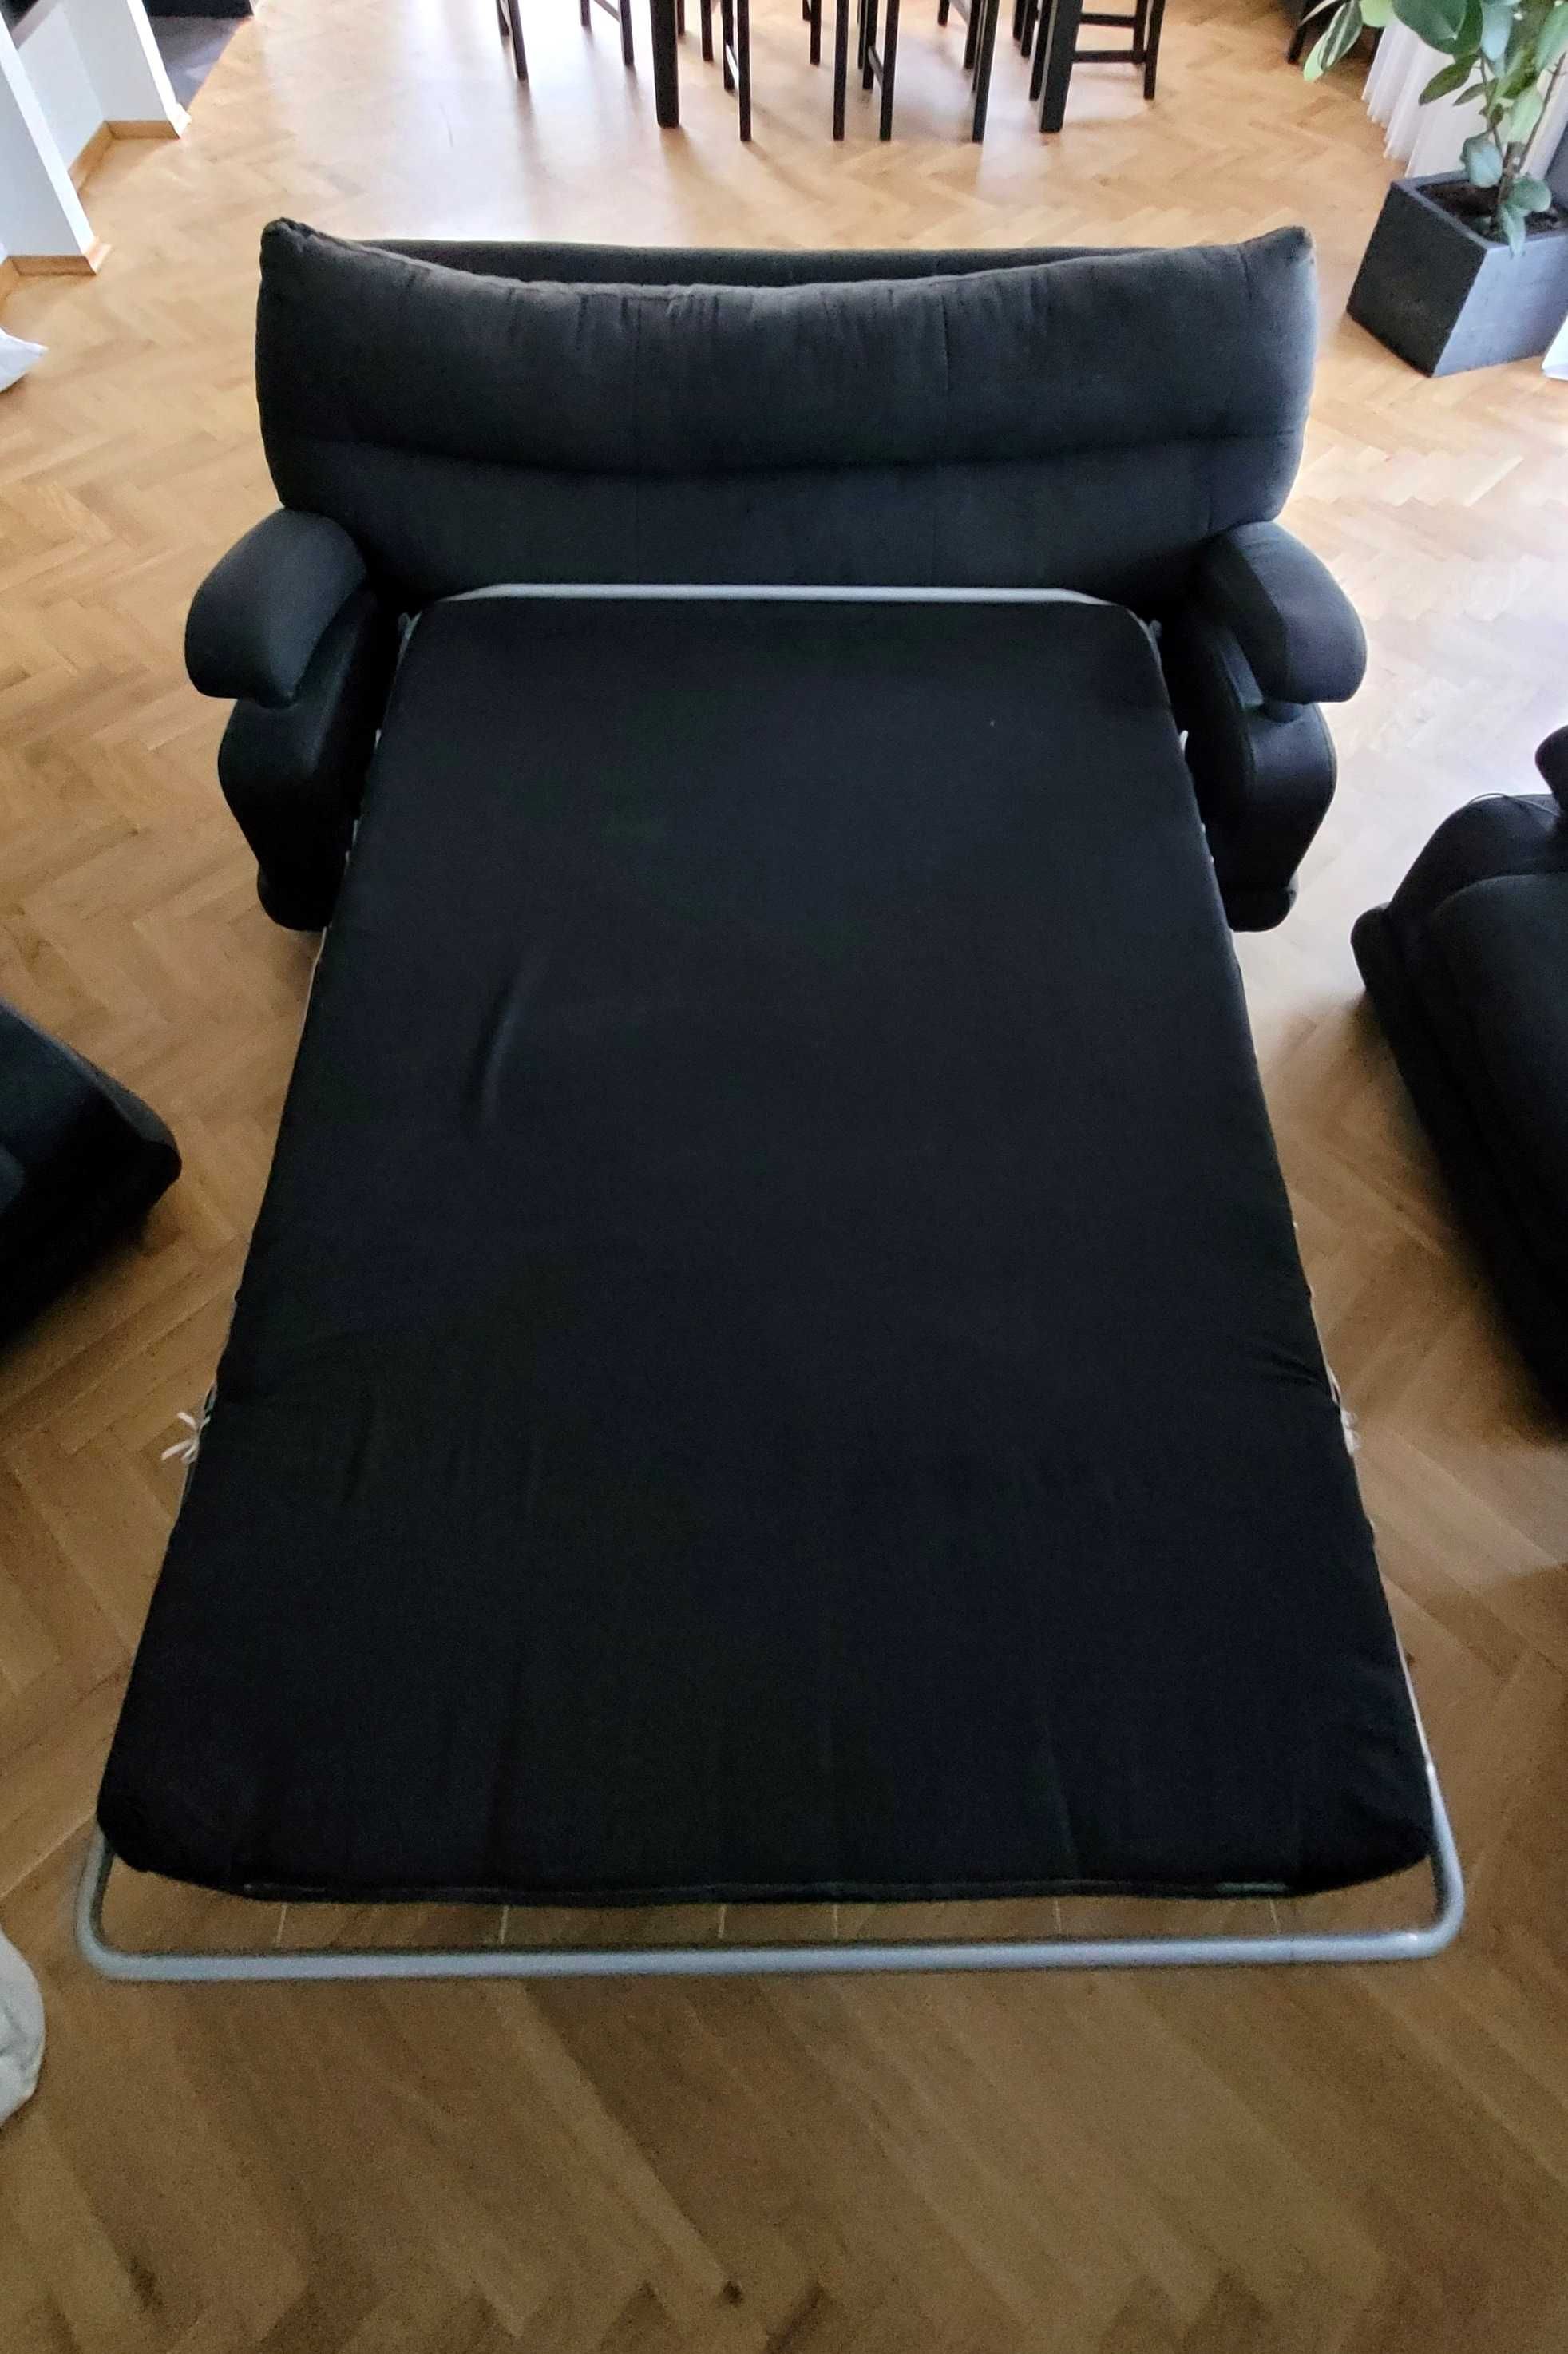 PILNE Wypoczynek - kanapa, 2 fotele, pufa